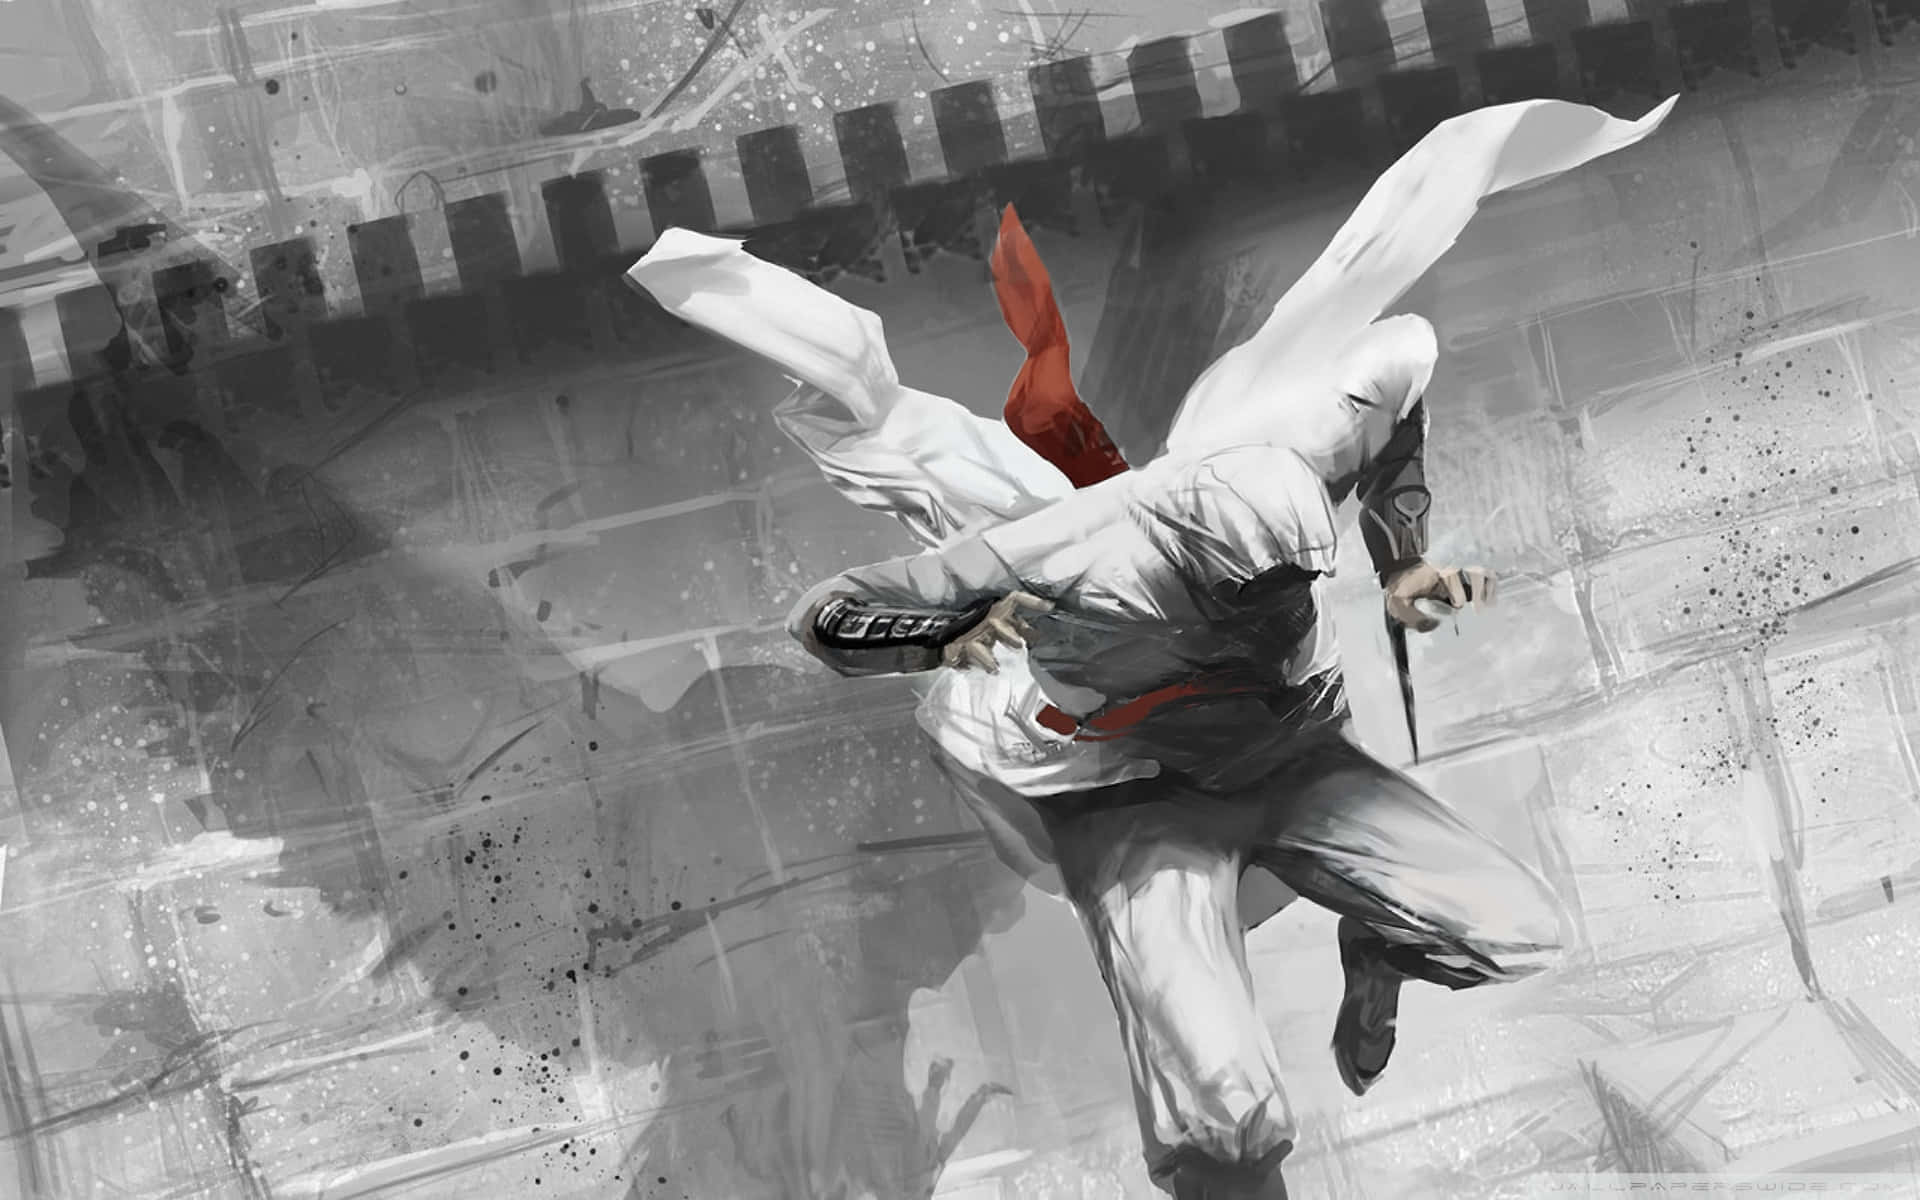 Elmaestro Asesino Altair Ibn-la'ahad Escalando Una Pared En El Mundo Lleno De Acción De Assassin's Creed. Fondo de pantalla